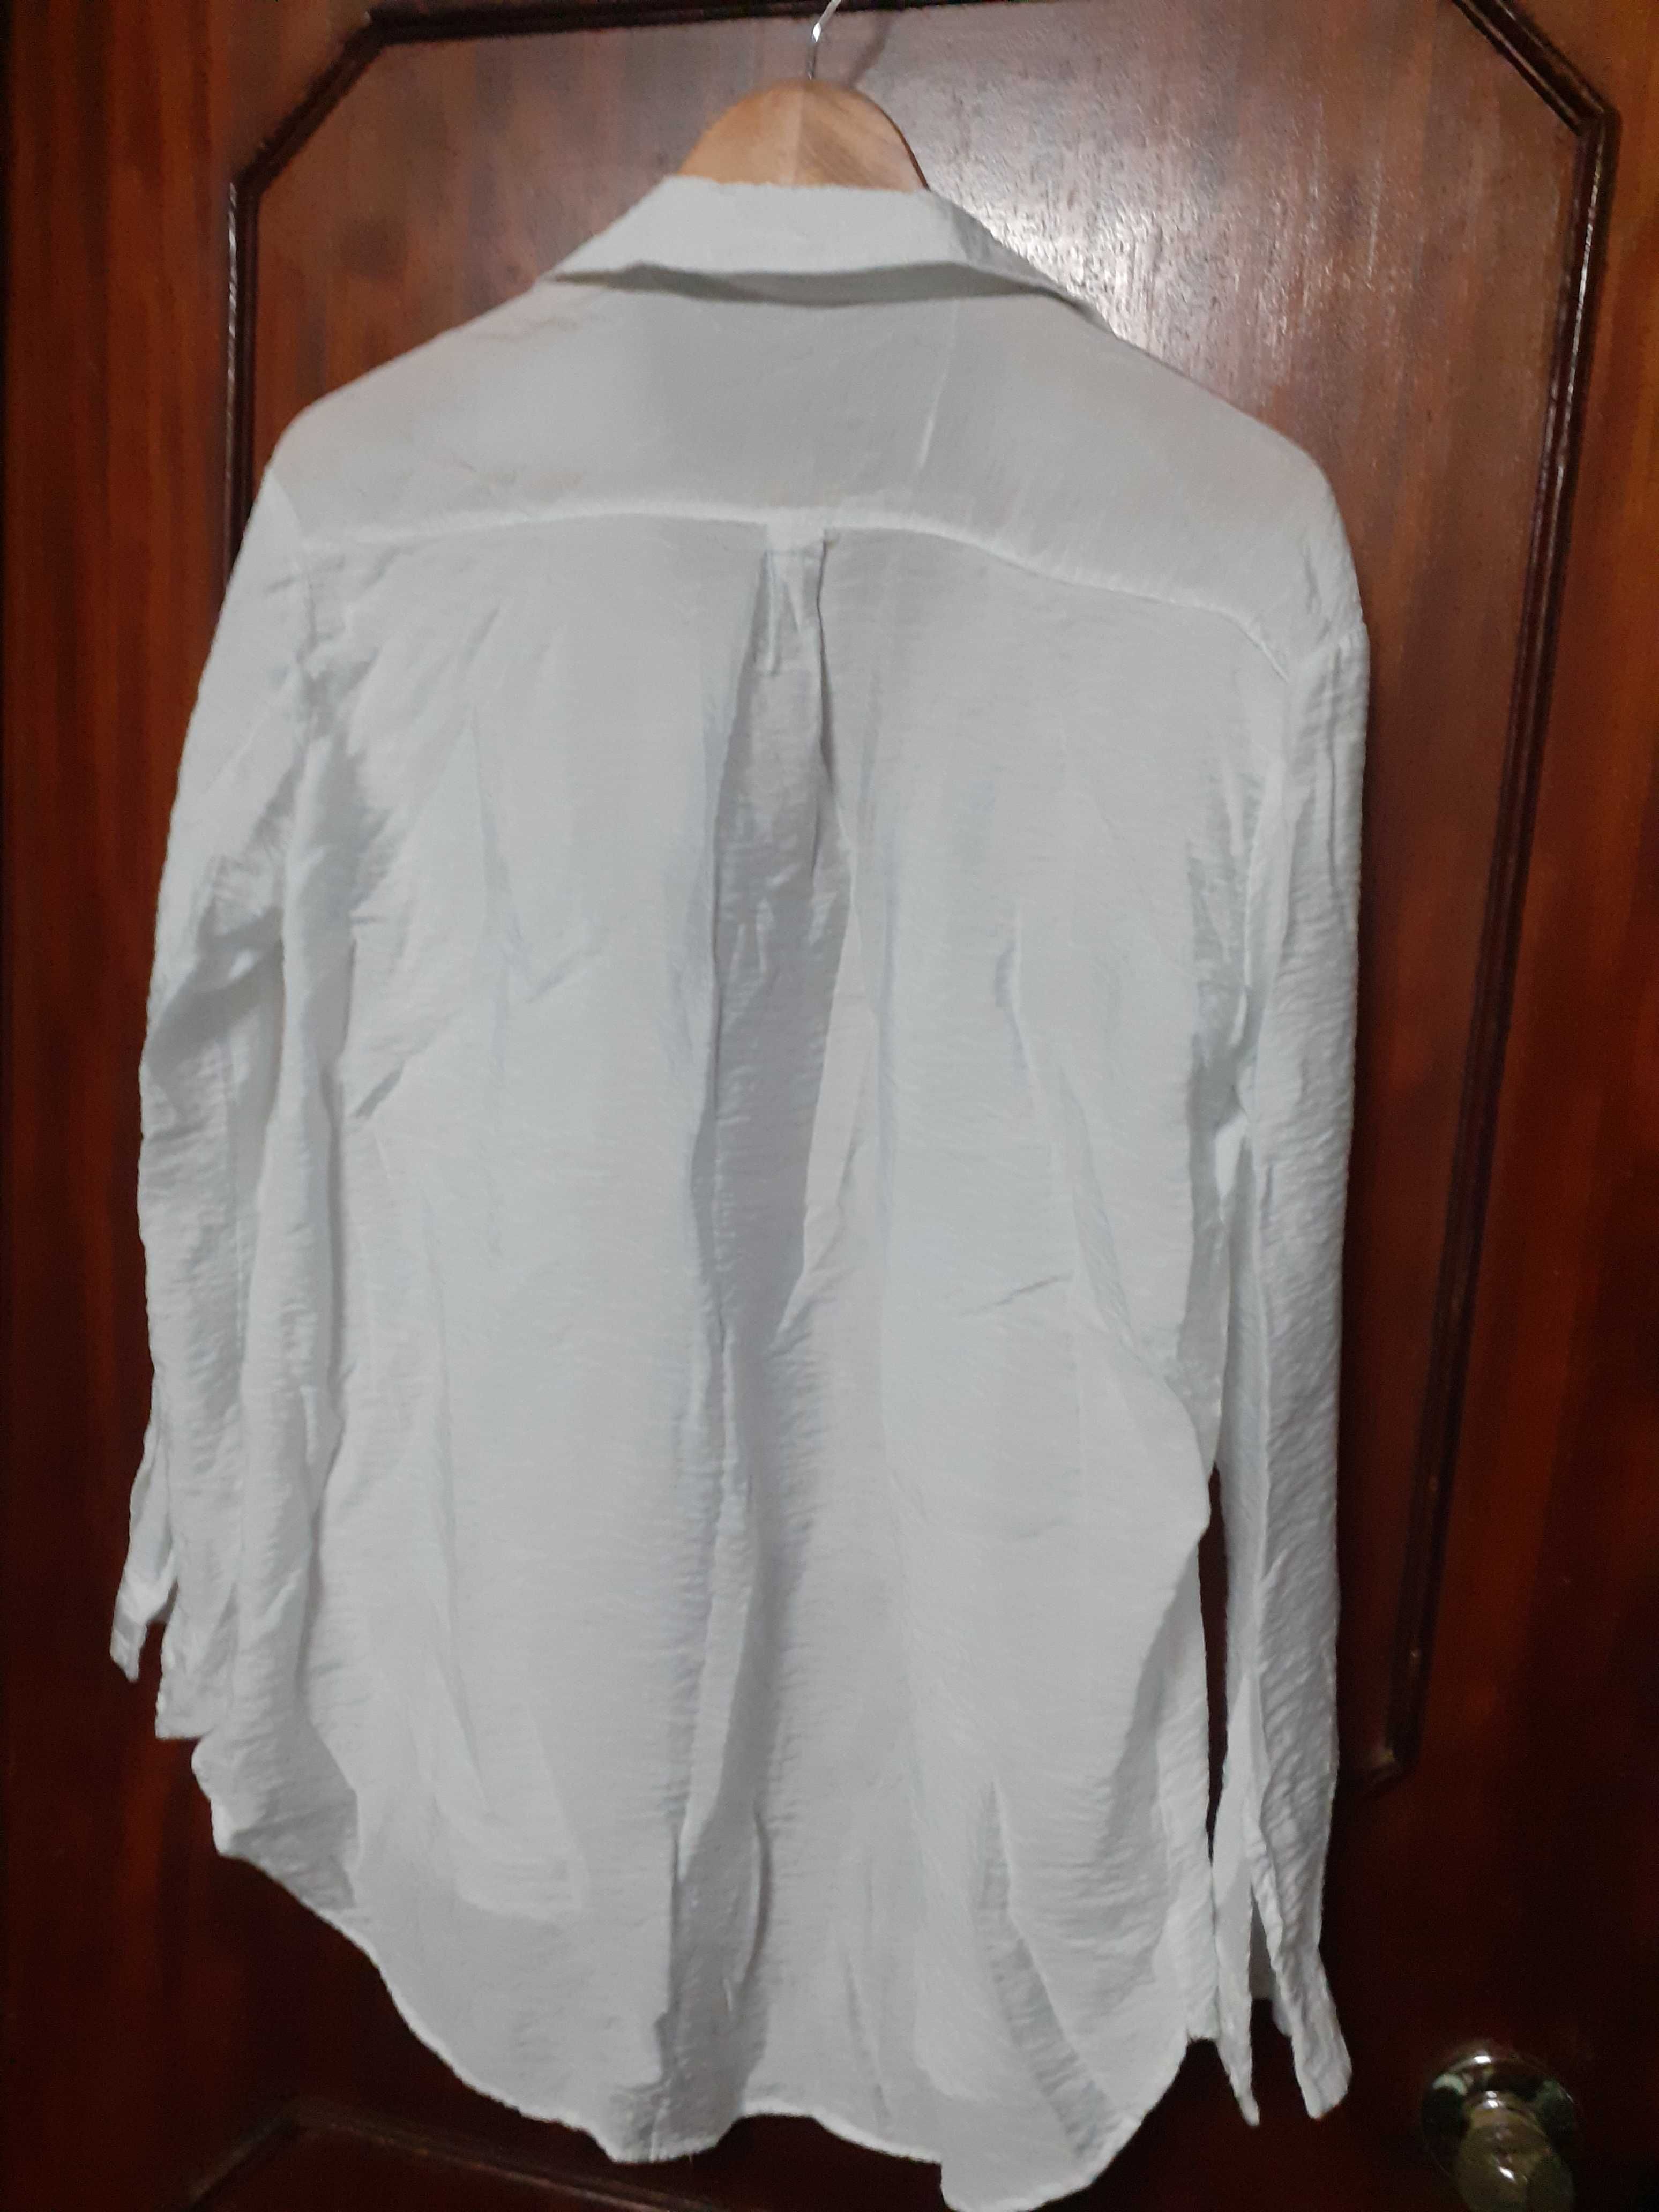 Camisa branca de manga comprida, da Lefties (tamanho S)